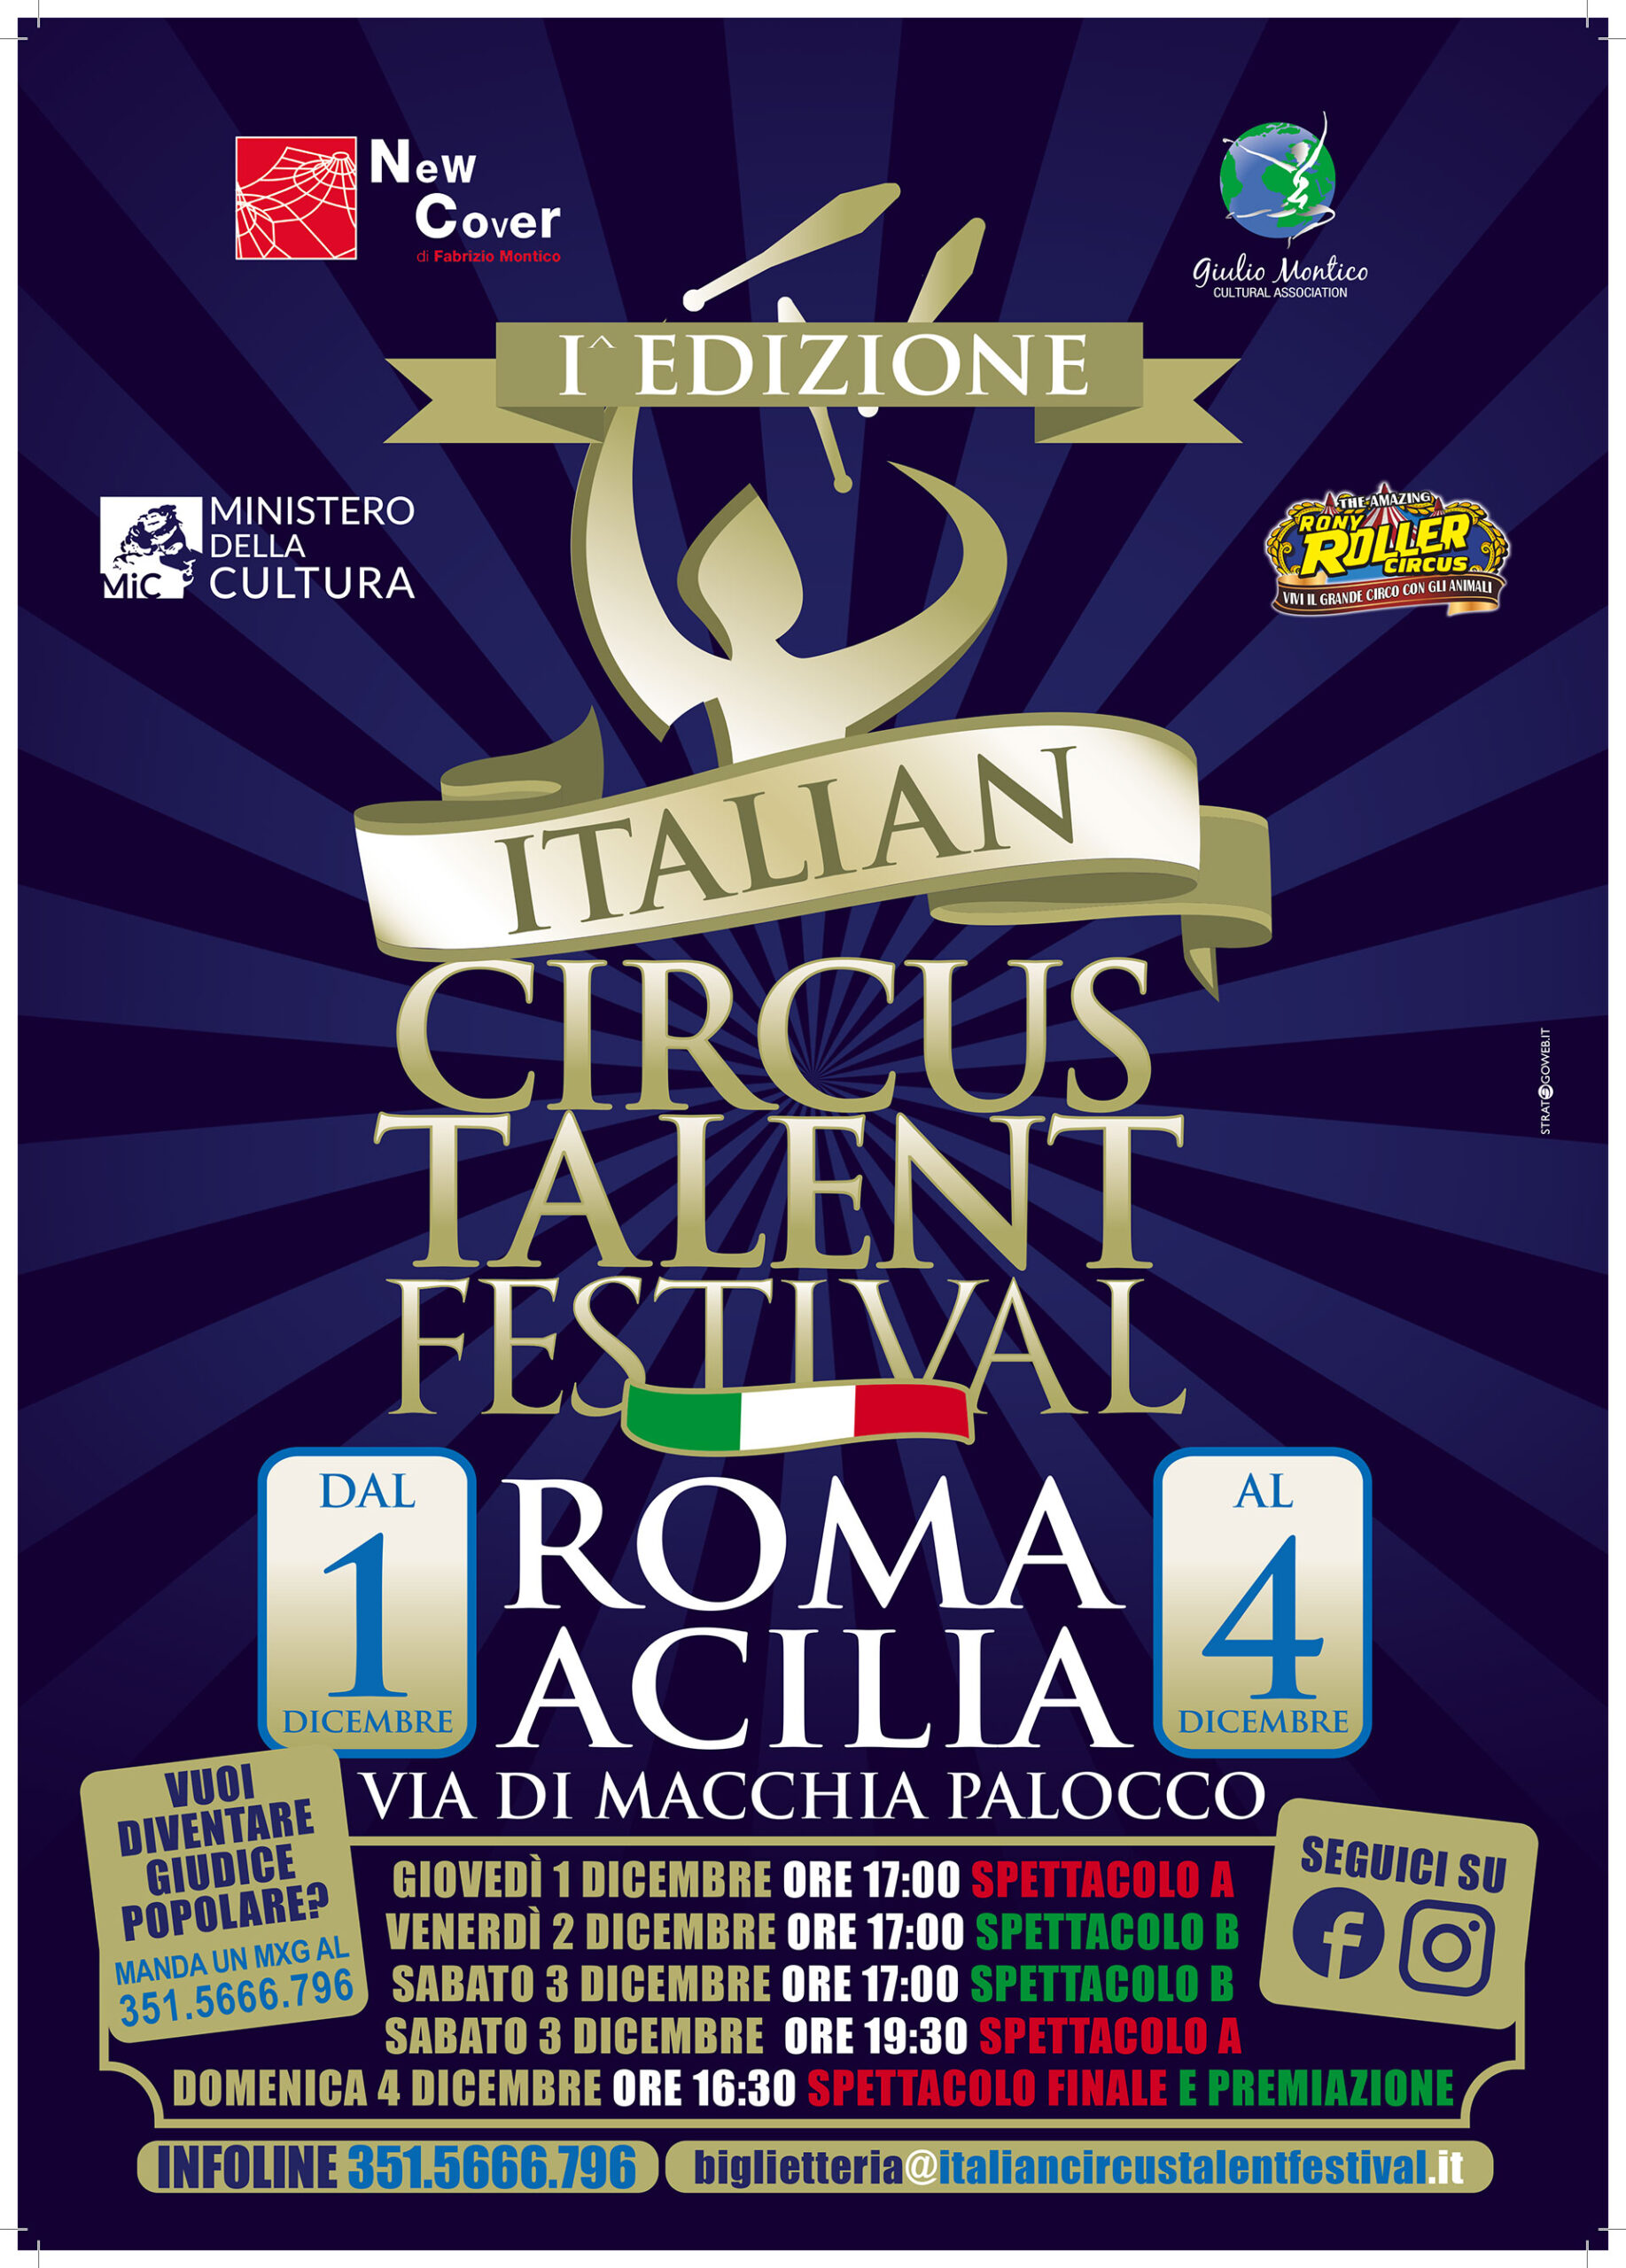 Al via la 1ᵃ edizione dell’Italian Circus Talent Festival di Roma